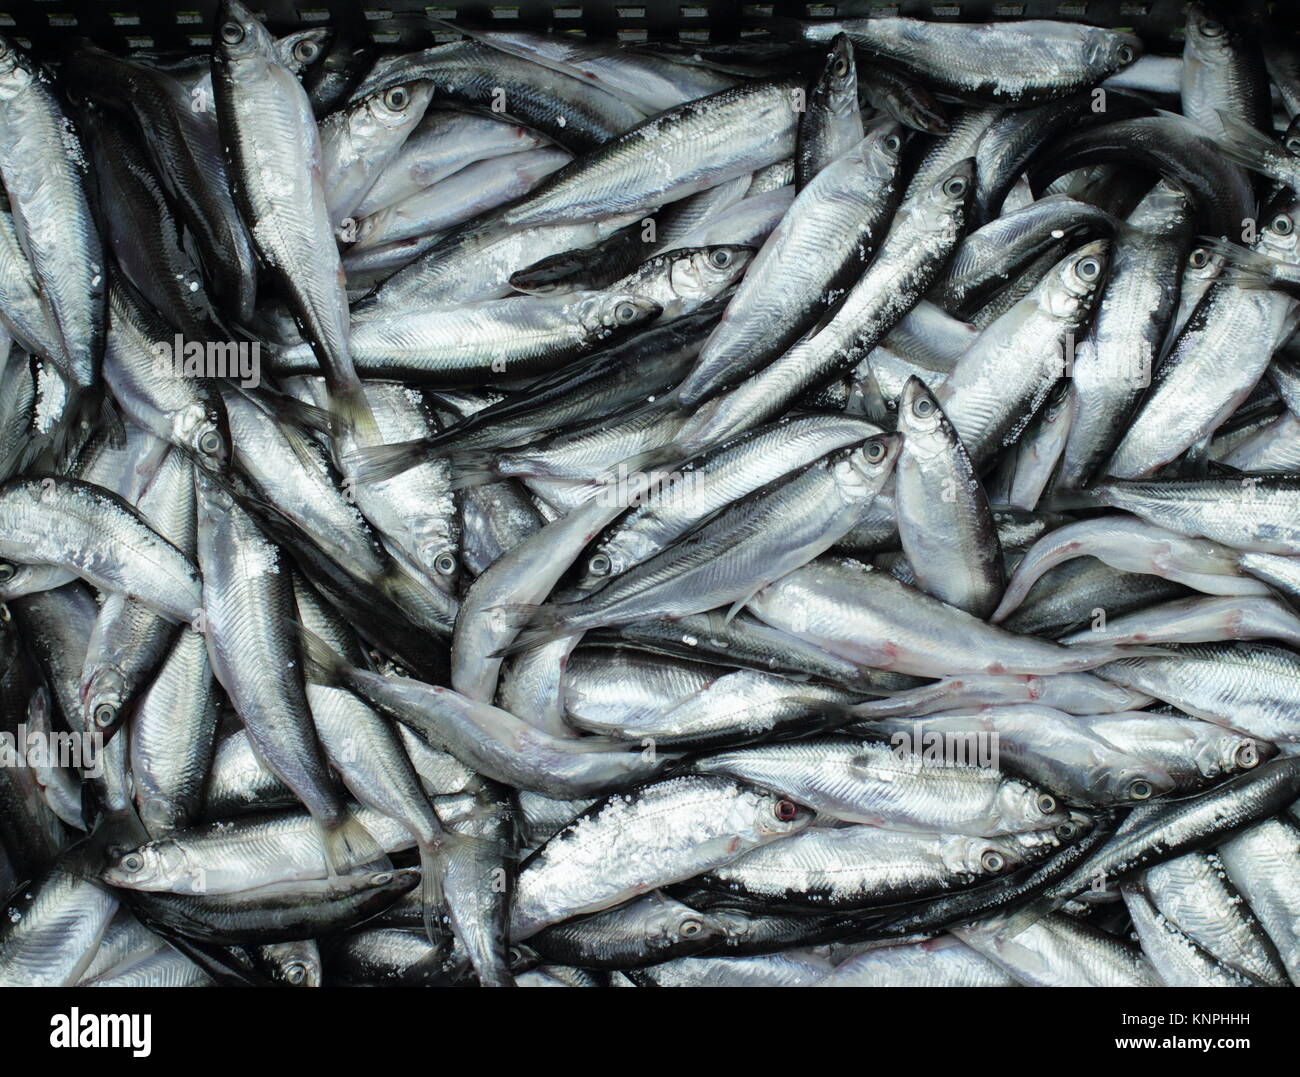 full basket of bleak fish, little silver fish Stock Photo